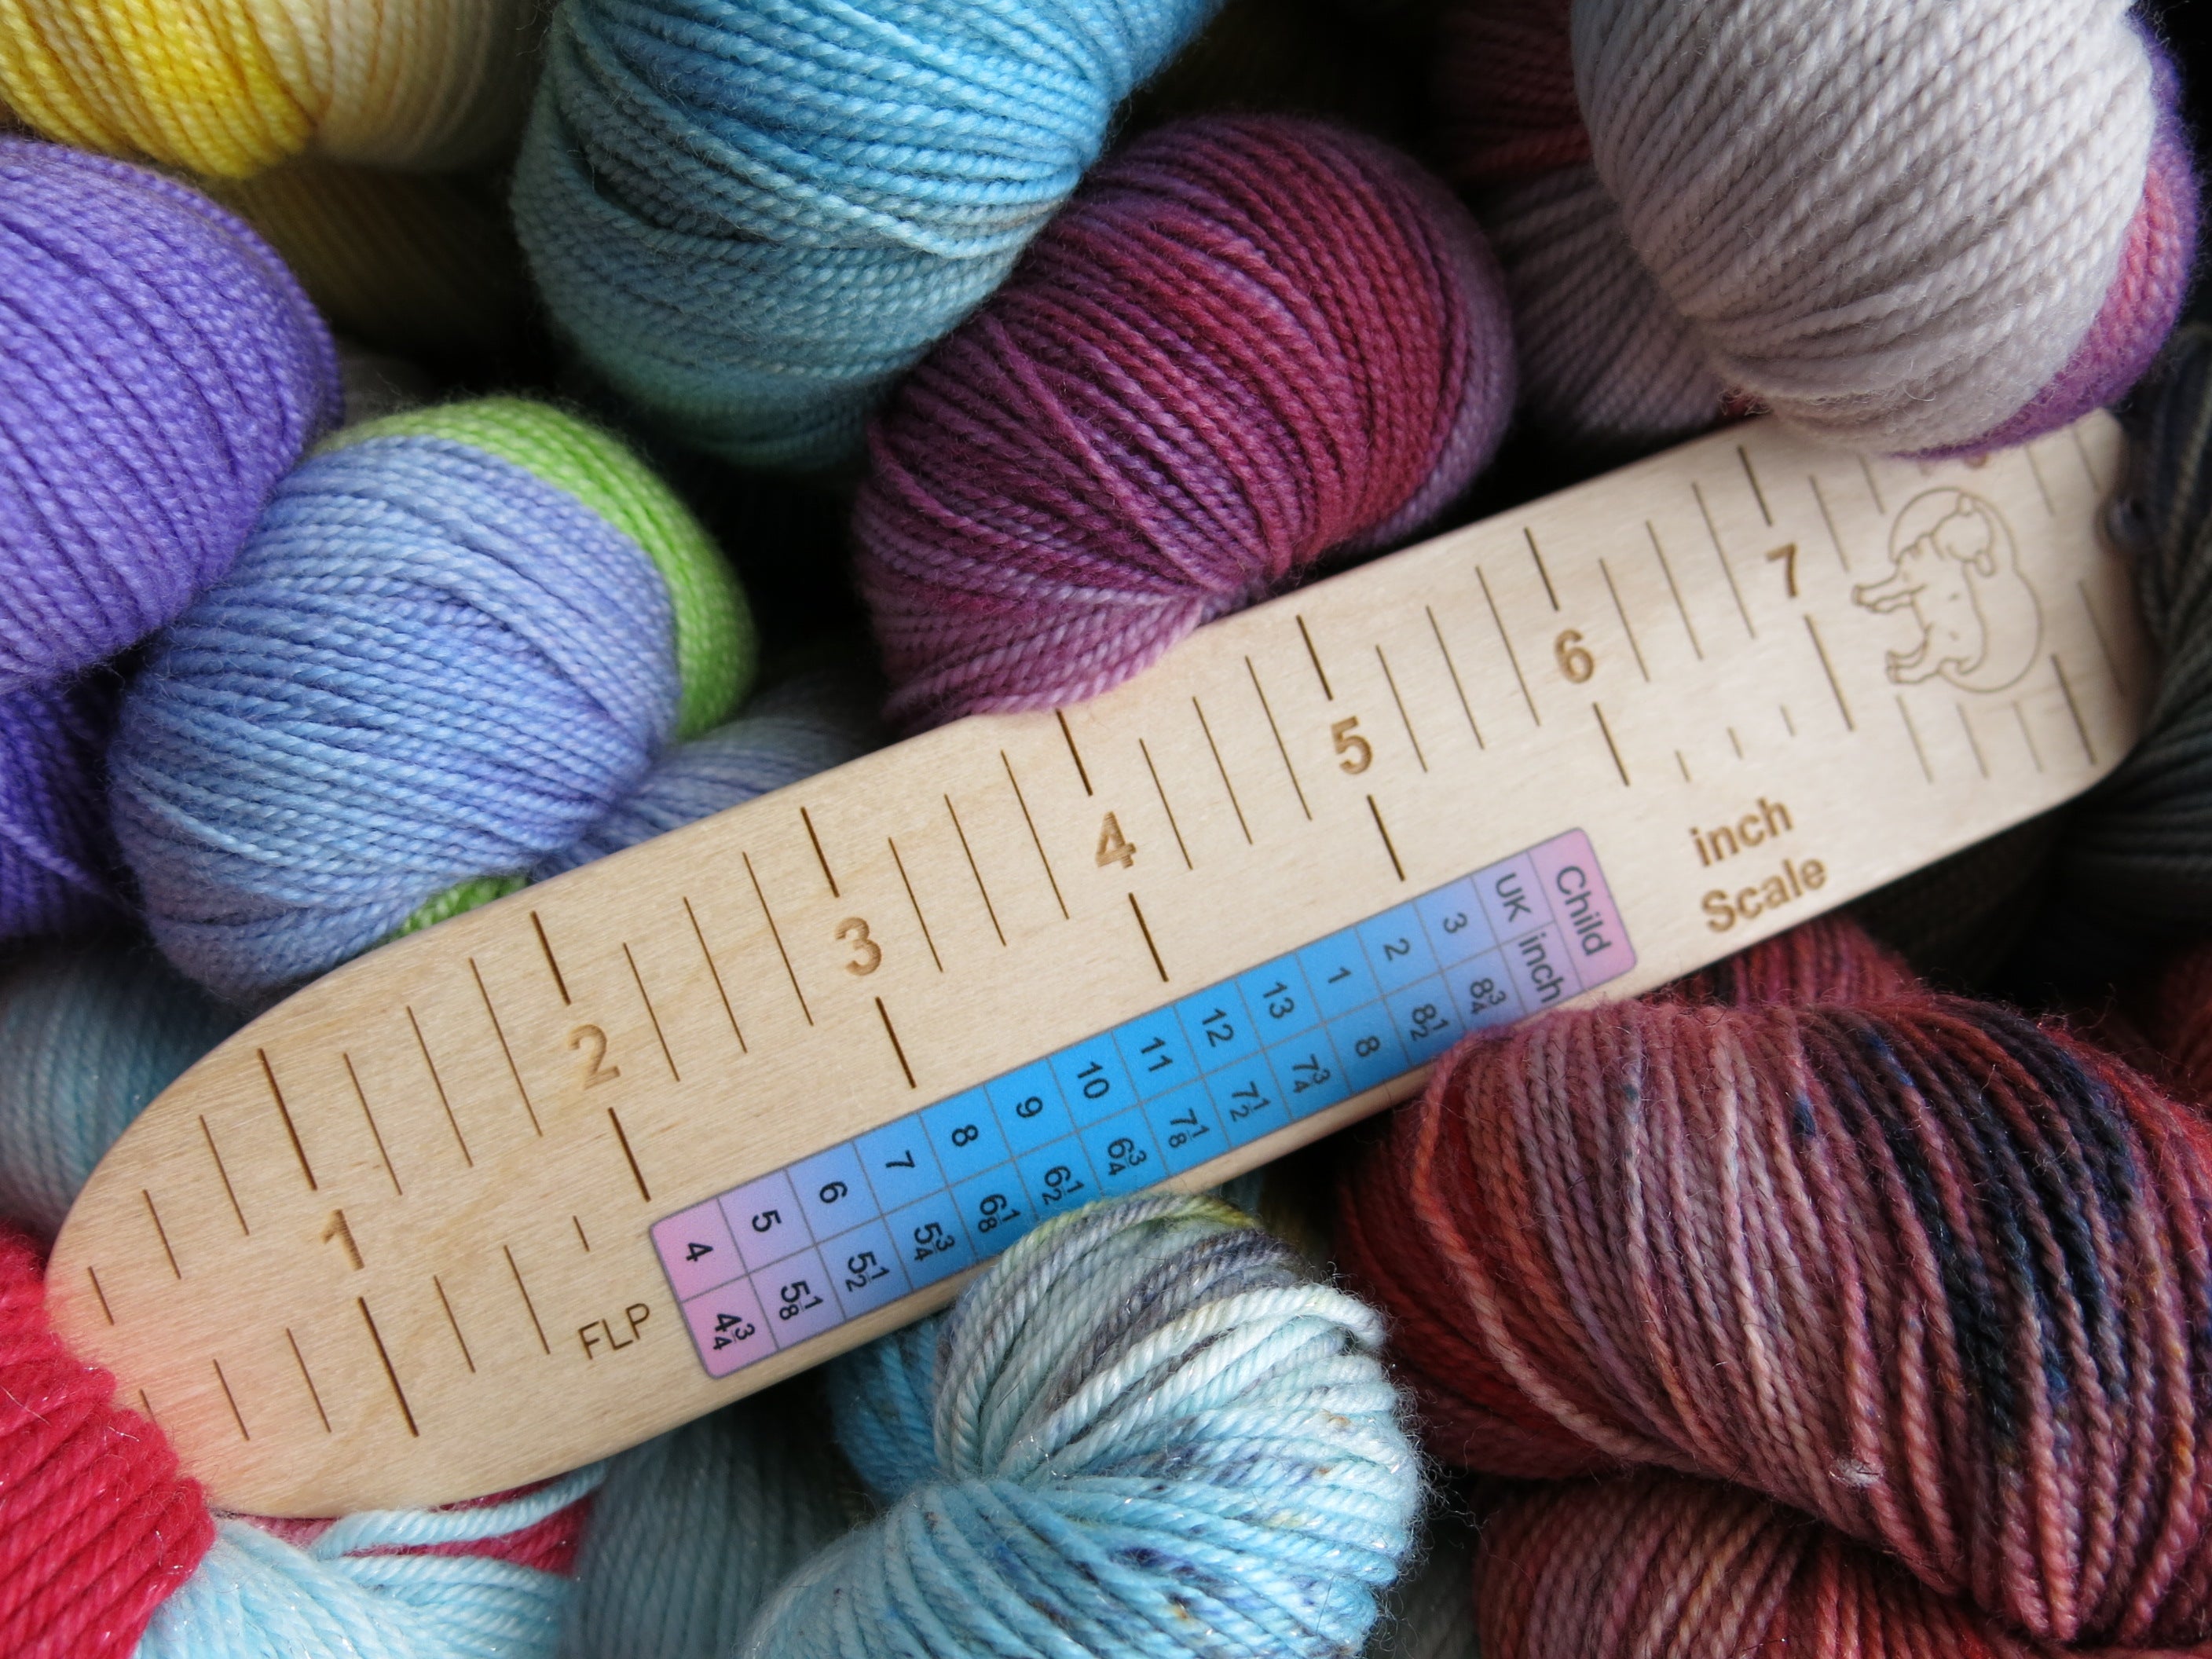 Socker's Rule UK made birch wood sock measuring ruler for knitting kids socks